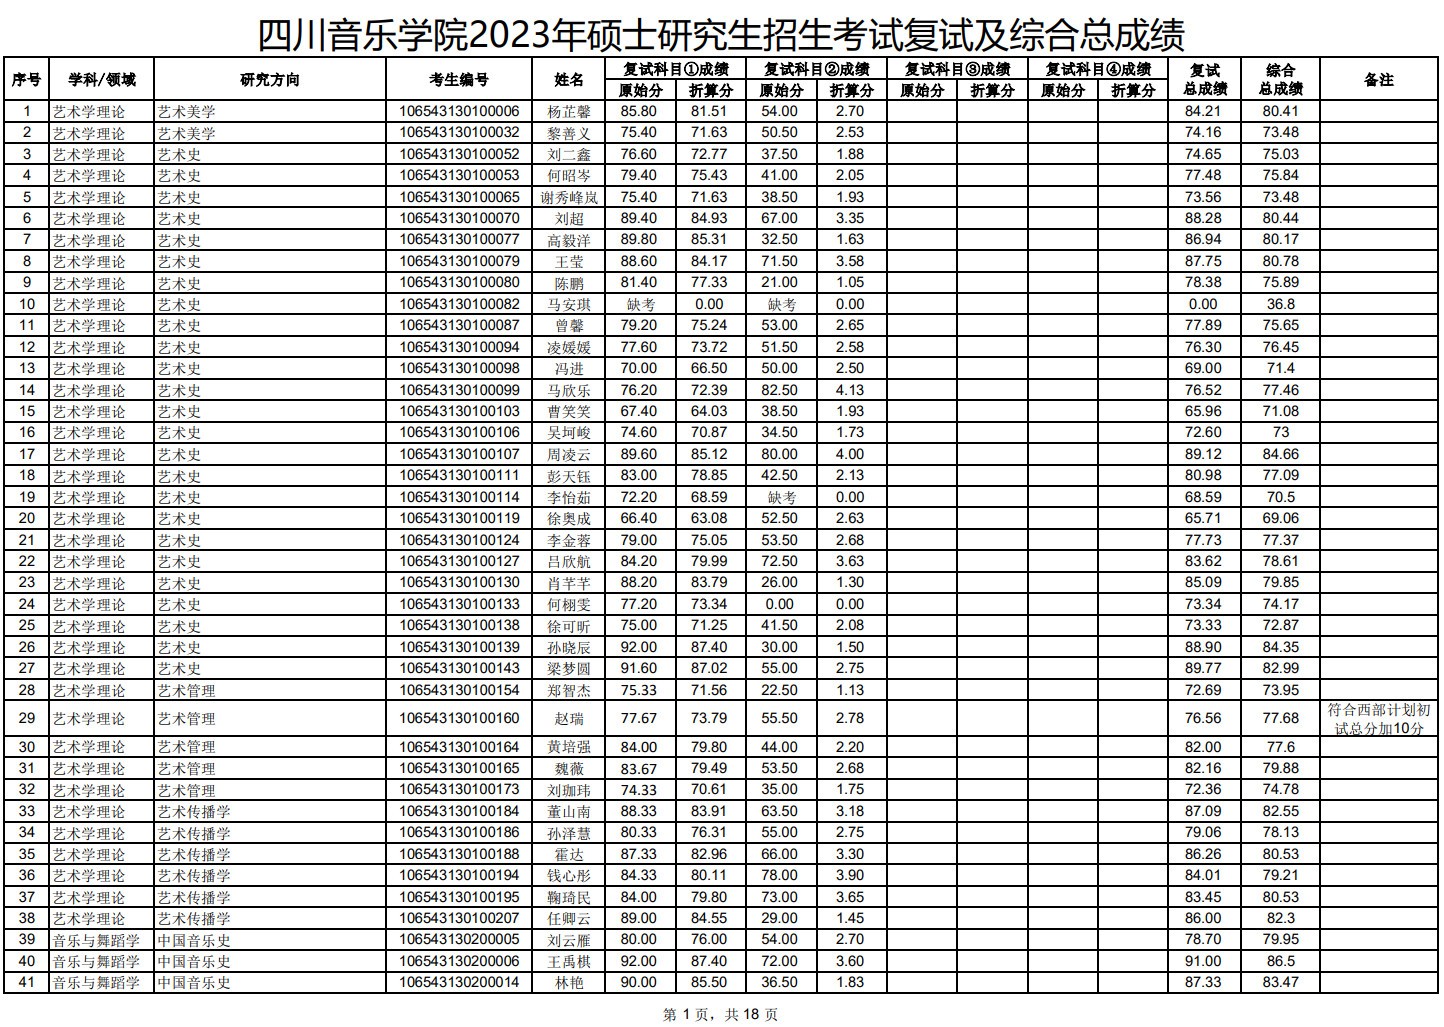 2023年四川音乐学院舞蹈硕士研究生招生考试复试及综合总成绩公示